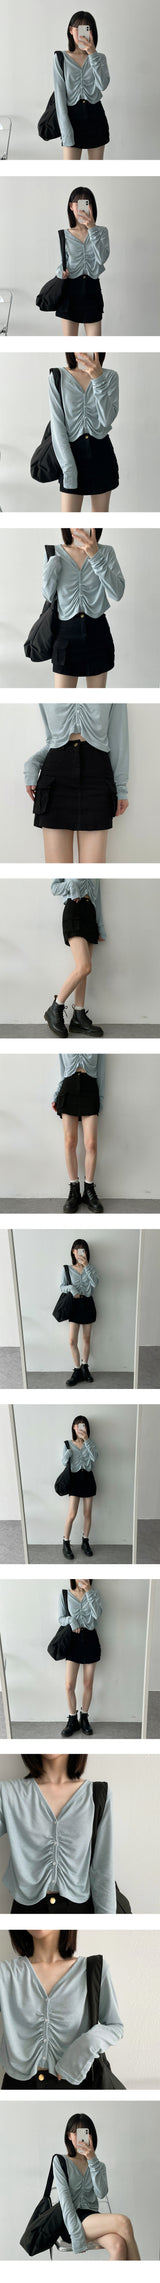 ミカゴミニスカート / MGICAGO MINI-Skirt